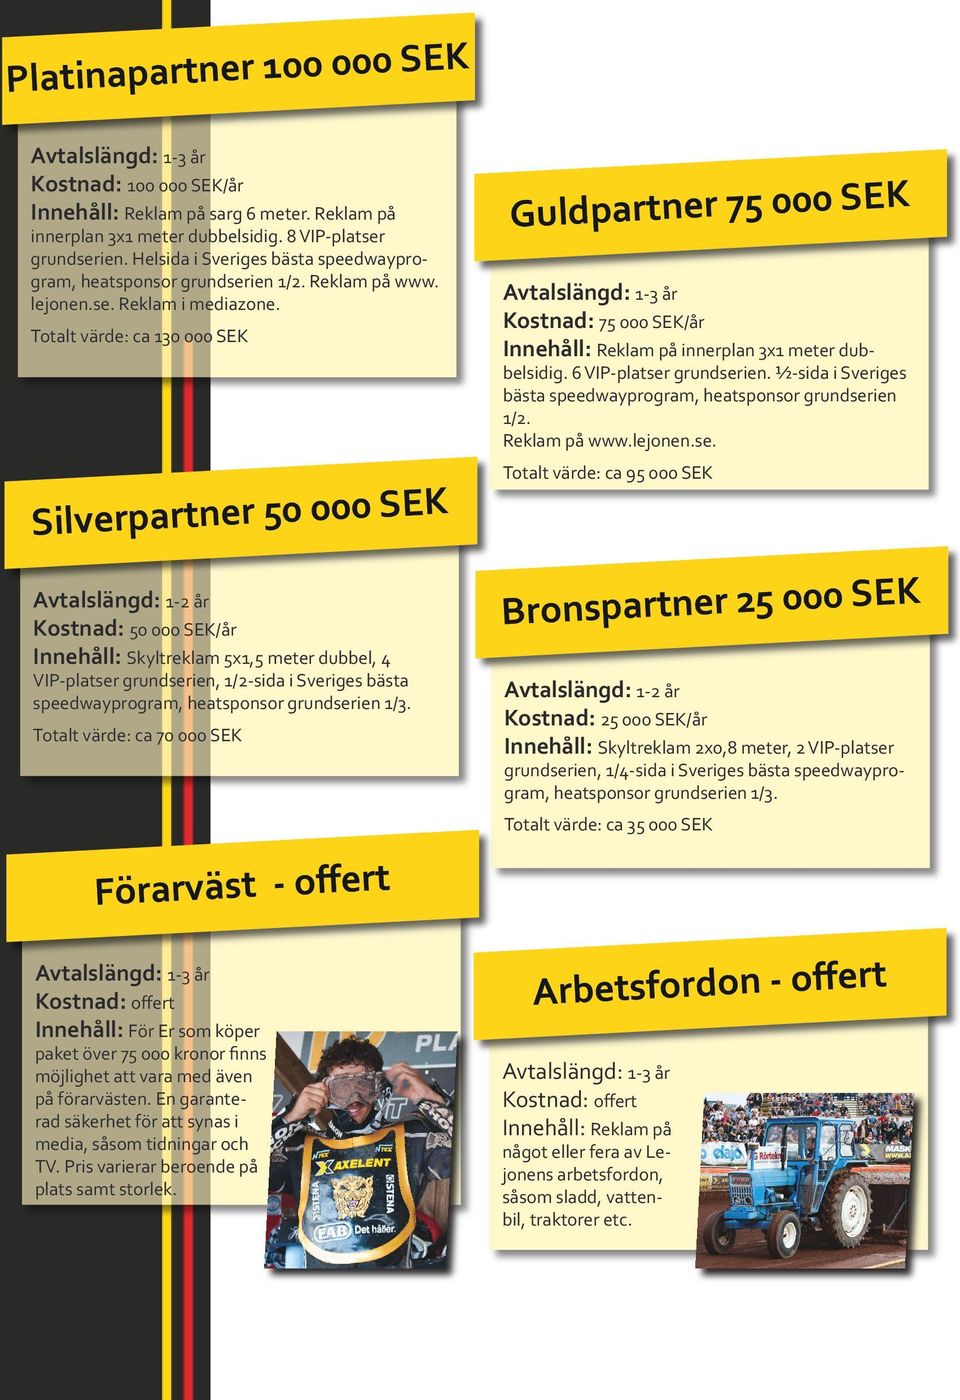 Totalt värde: ca 130 000 SEK Silverpartner 50 000 SEK Avtalslängd: 1-2 år Kostnad: 50 000 SEK/år Innehåll: Skyltreklam 5x1,5 meter dubbel, 4 VIP-platser grundserien, 1/2-sida i Sveriges bästa